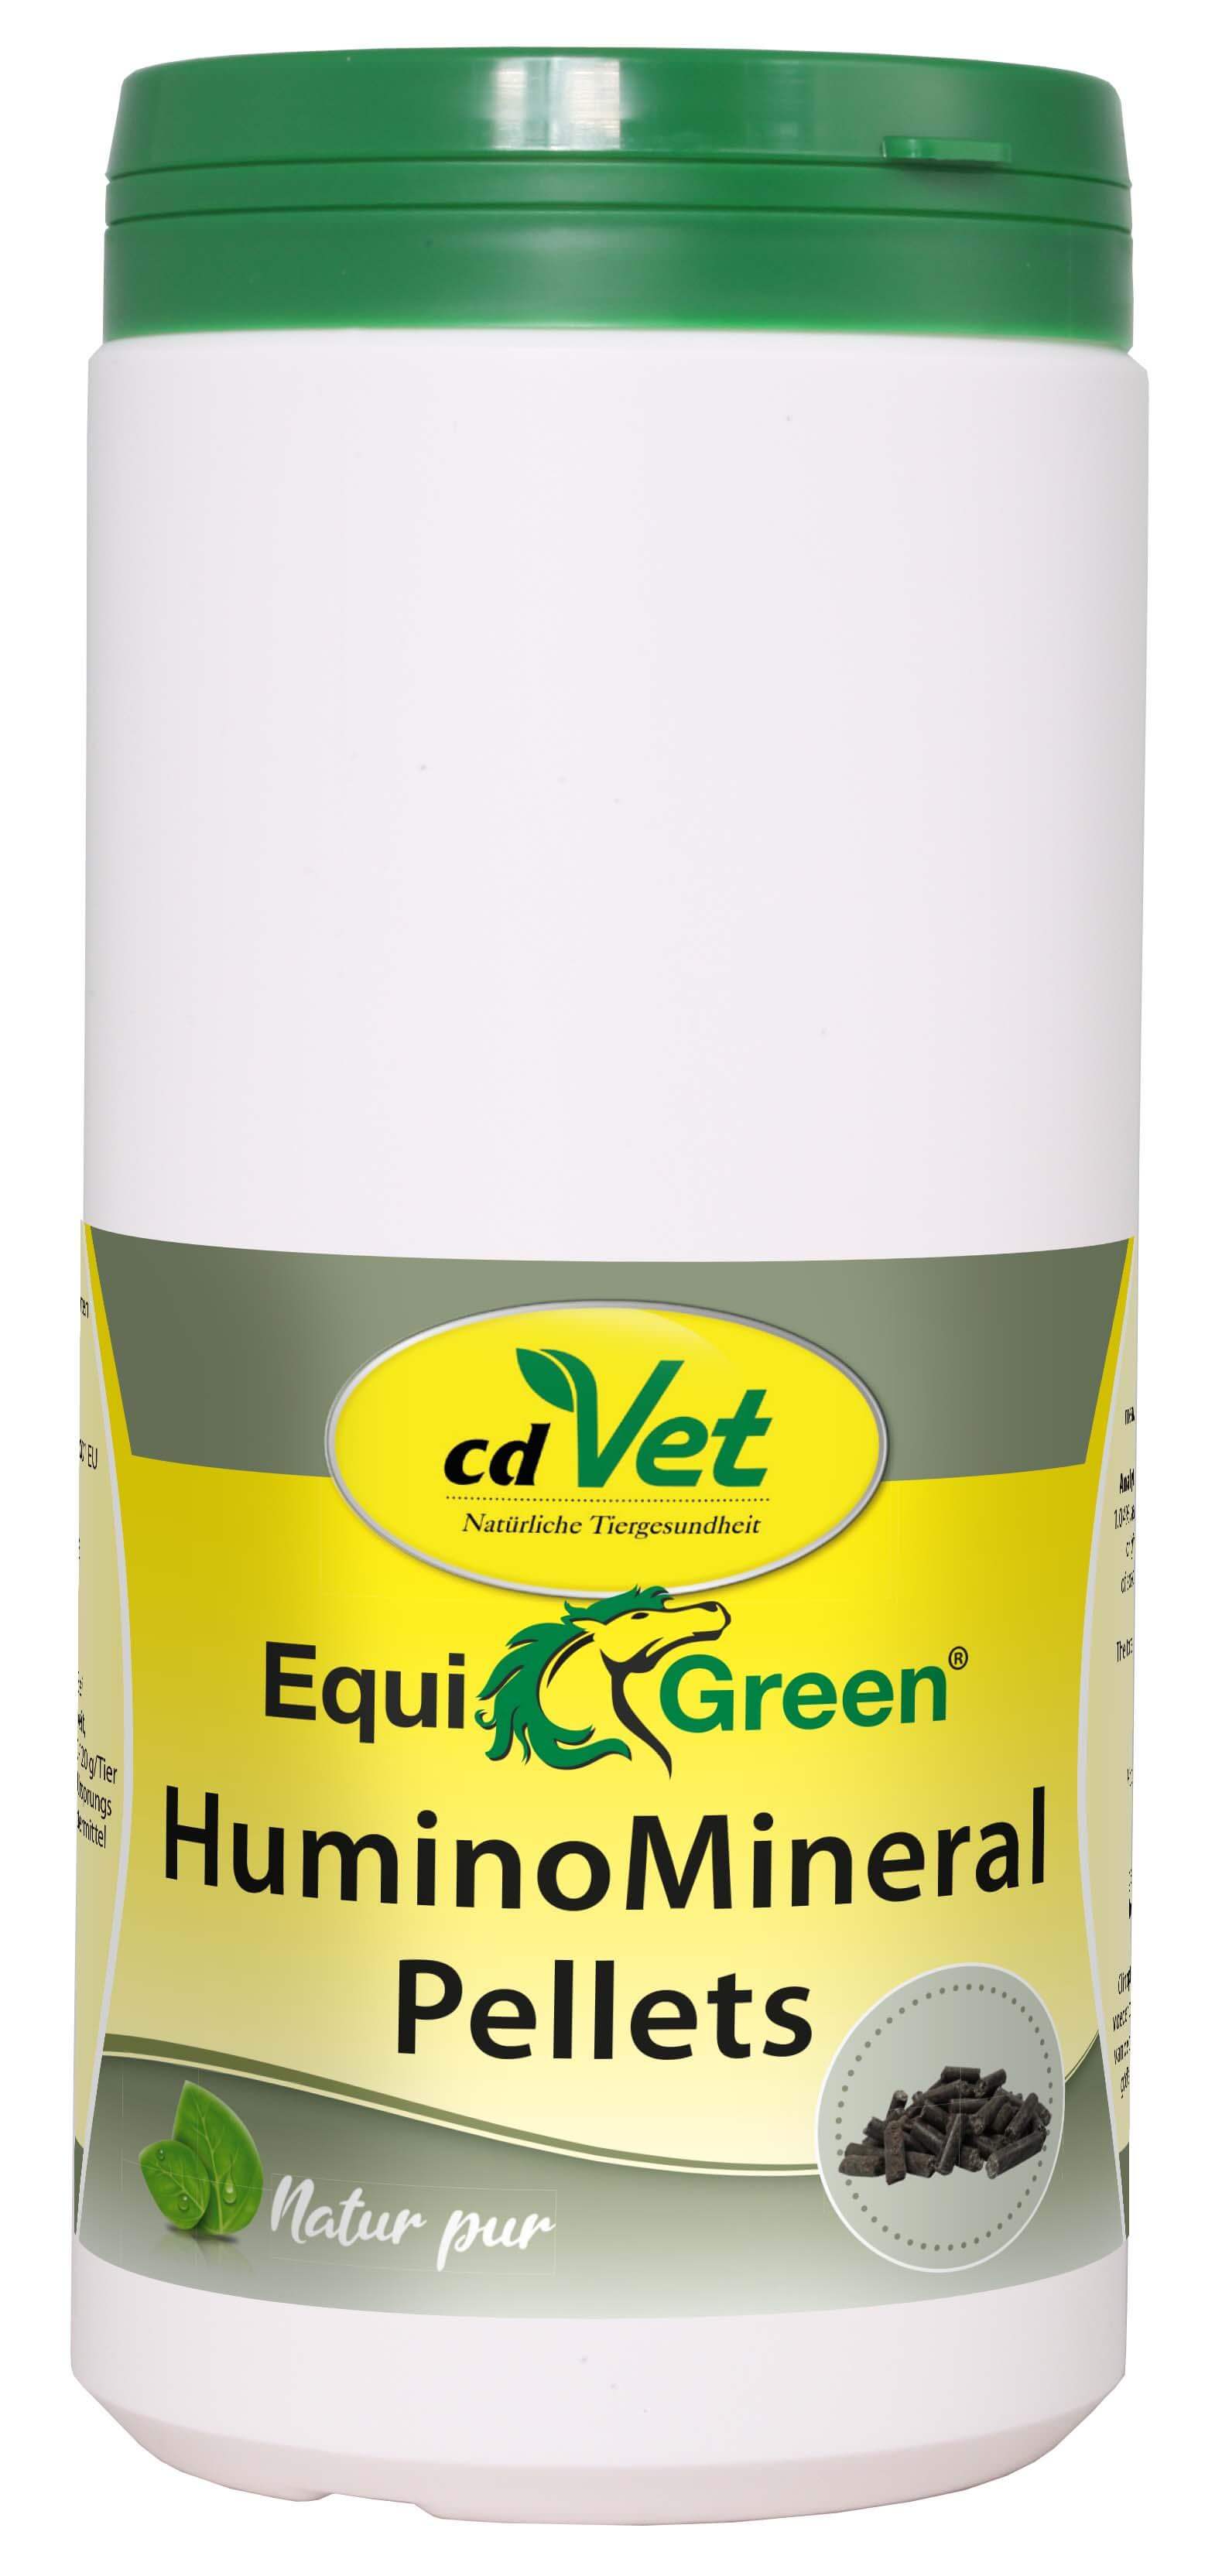 EquiGreen HuminoMineral Pellets 1 kg